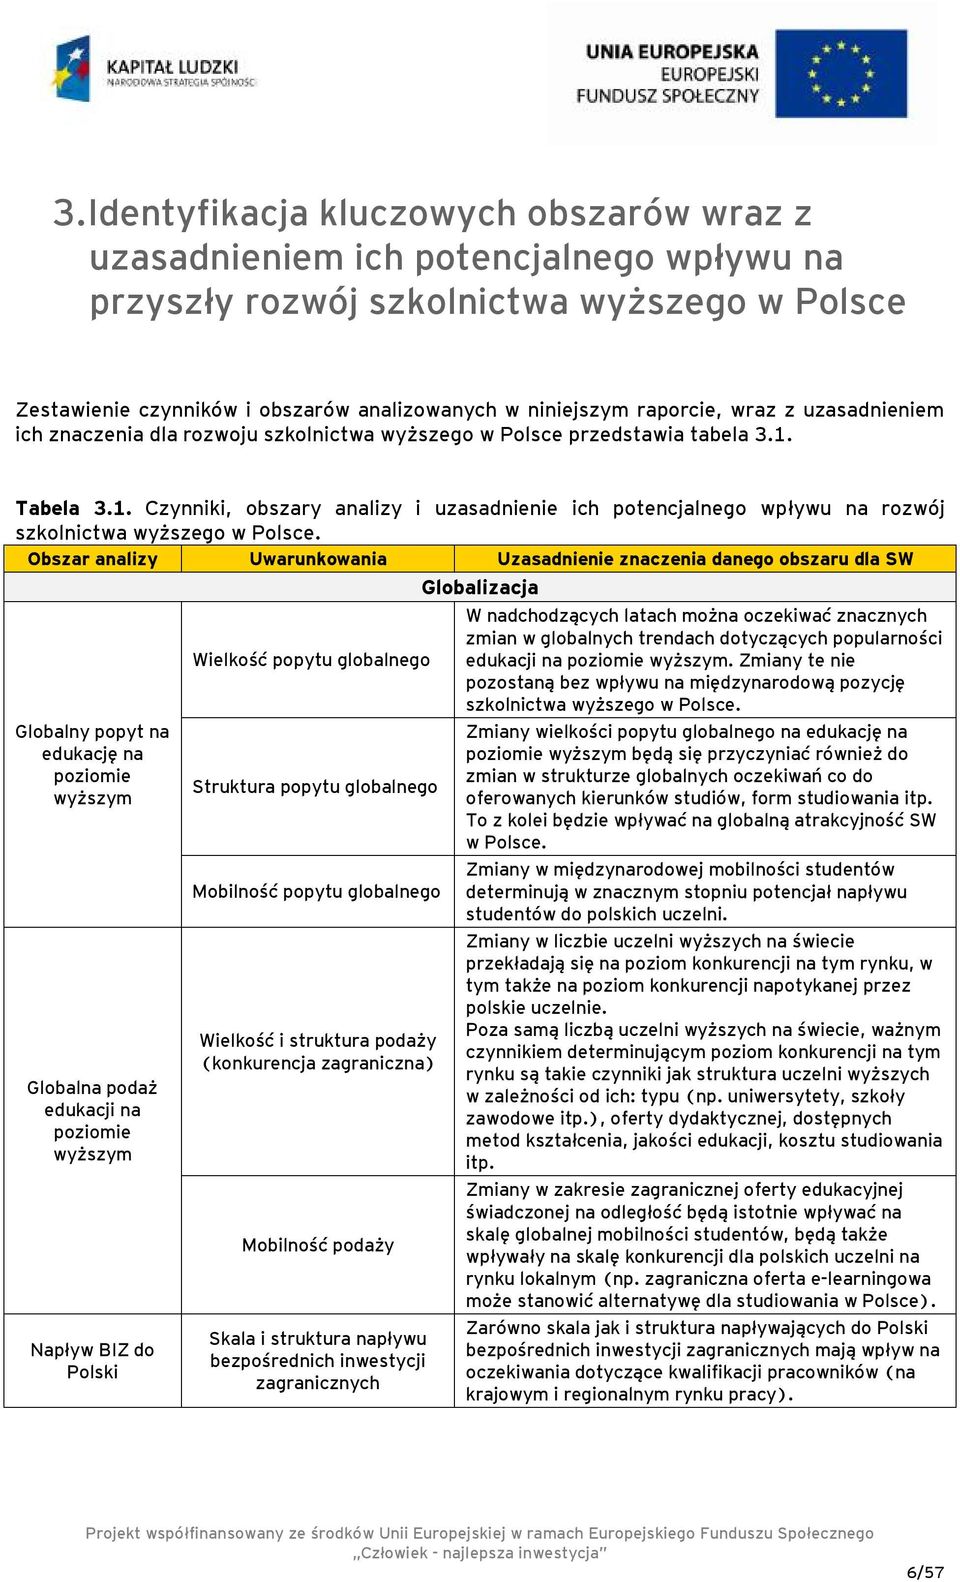 Tabela 3.1. Czynniki, obszary analizy i uzasadnienie ich potencjalnego wpływu na rozwój szkolnictwa wyższego w Polsce.